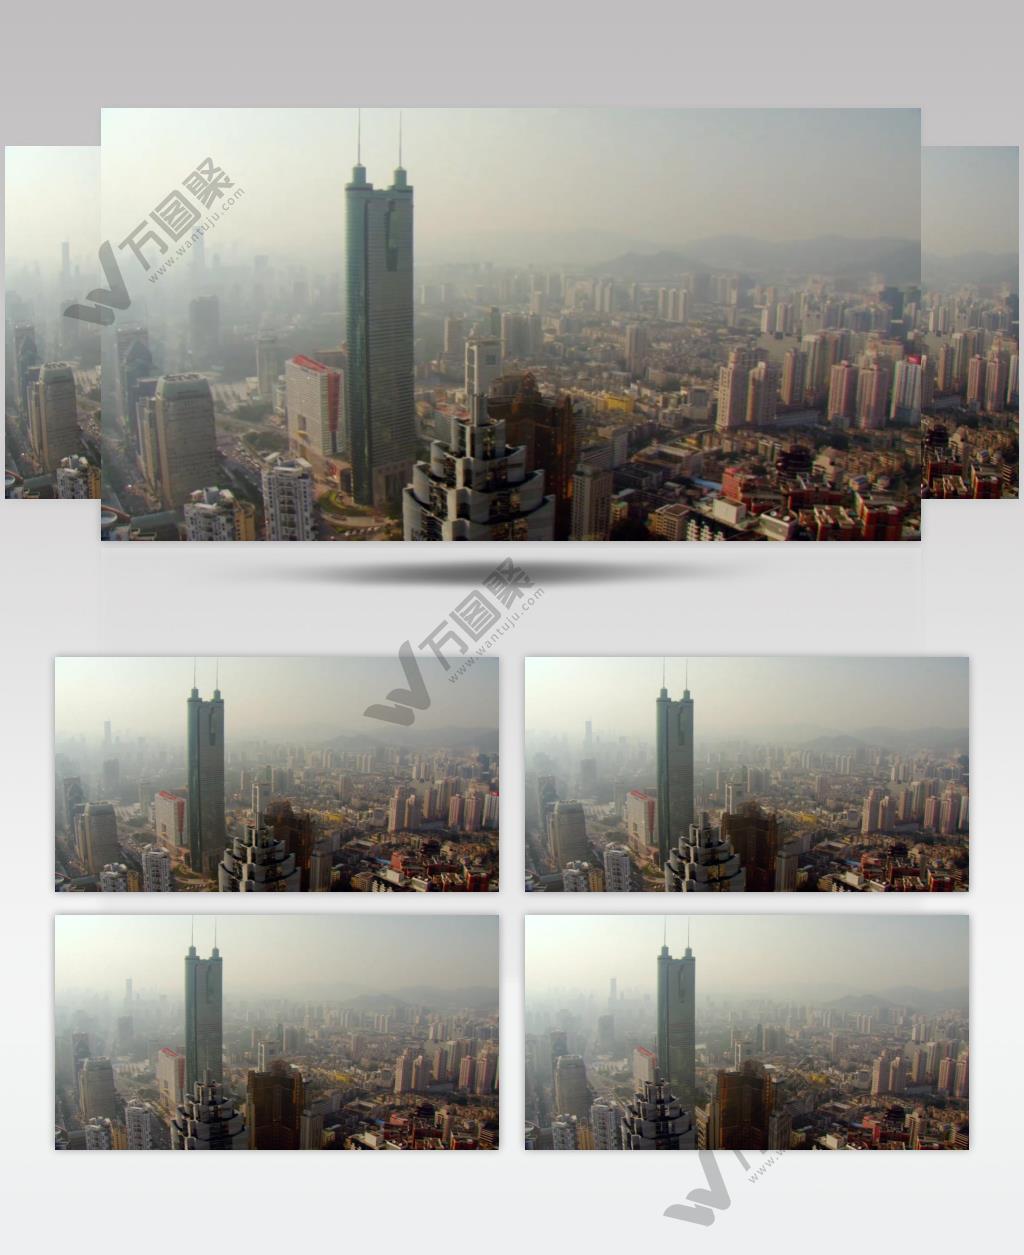 中国上海广州城市地标建筑高端办公楼夜景航拍宣传片高清视频素材现代城市12